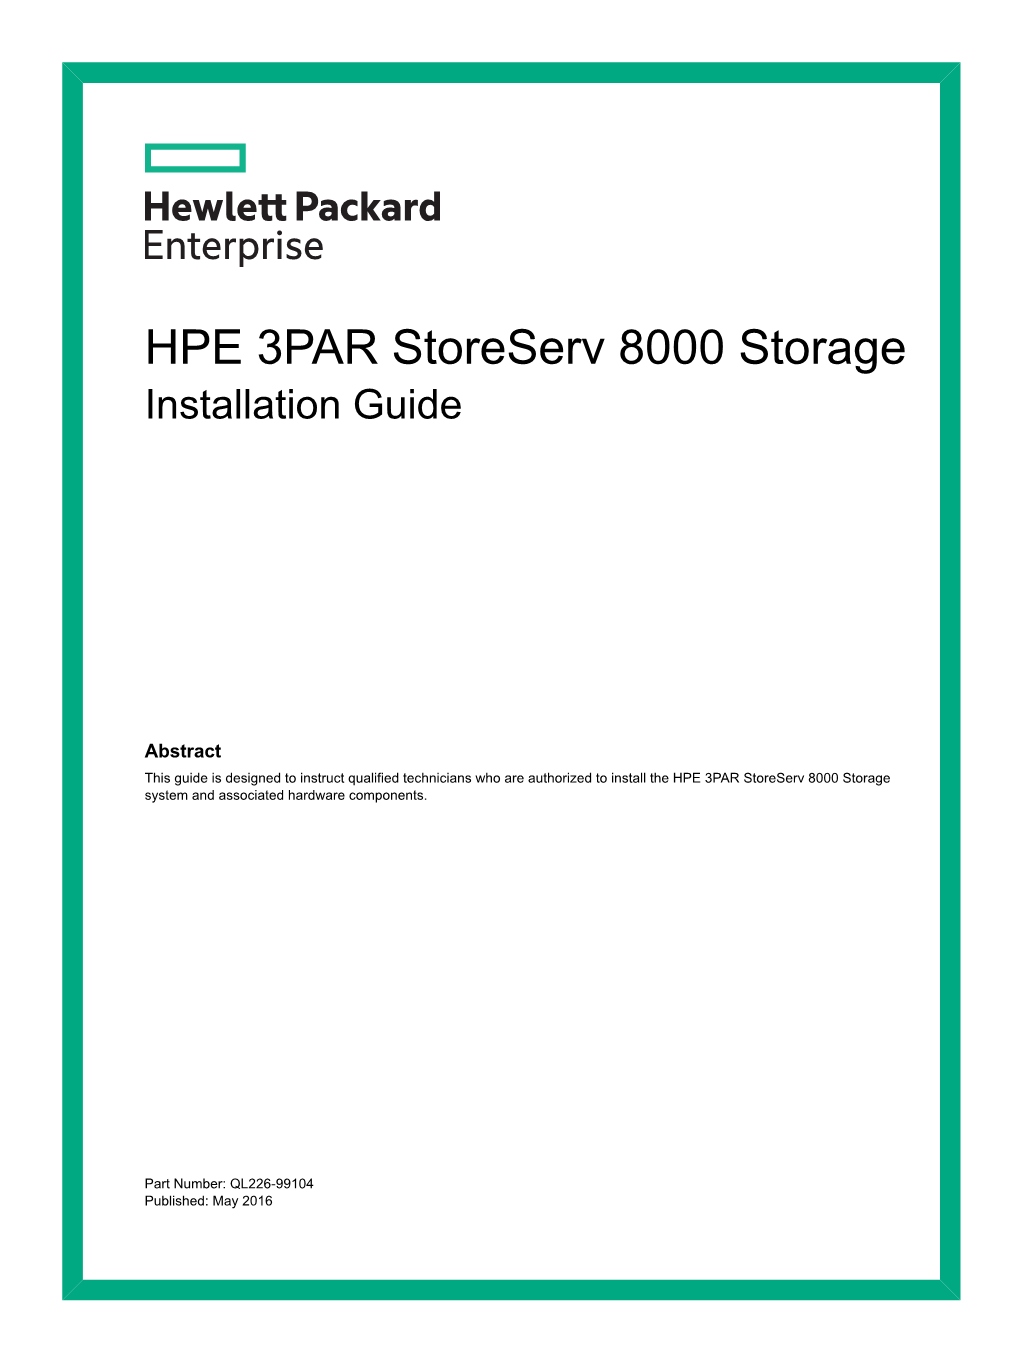 HPE 3PAR Storeserv 8000 Storage Installation Guide